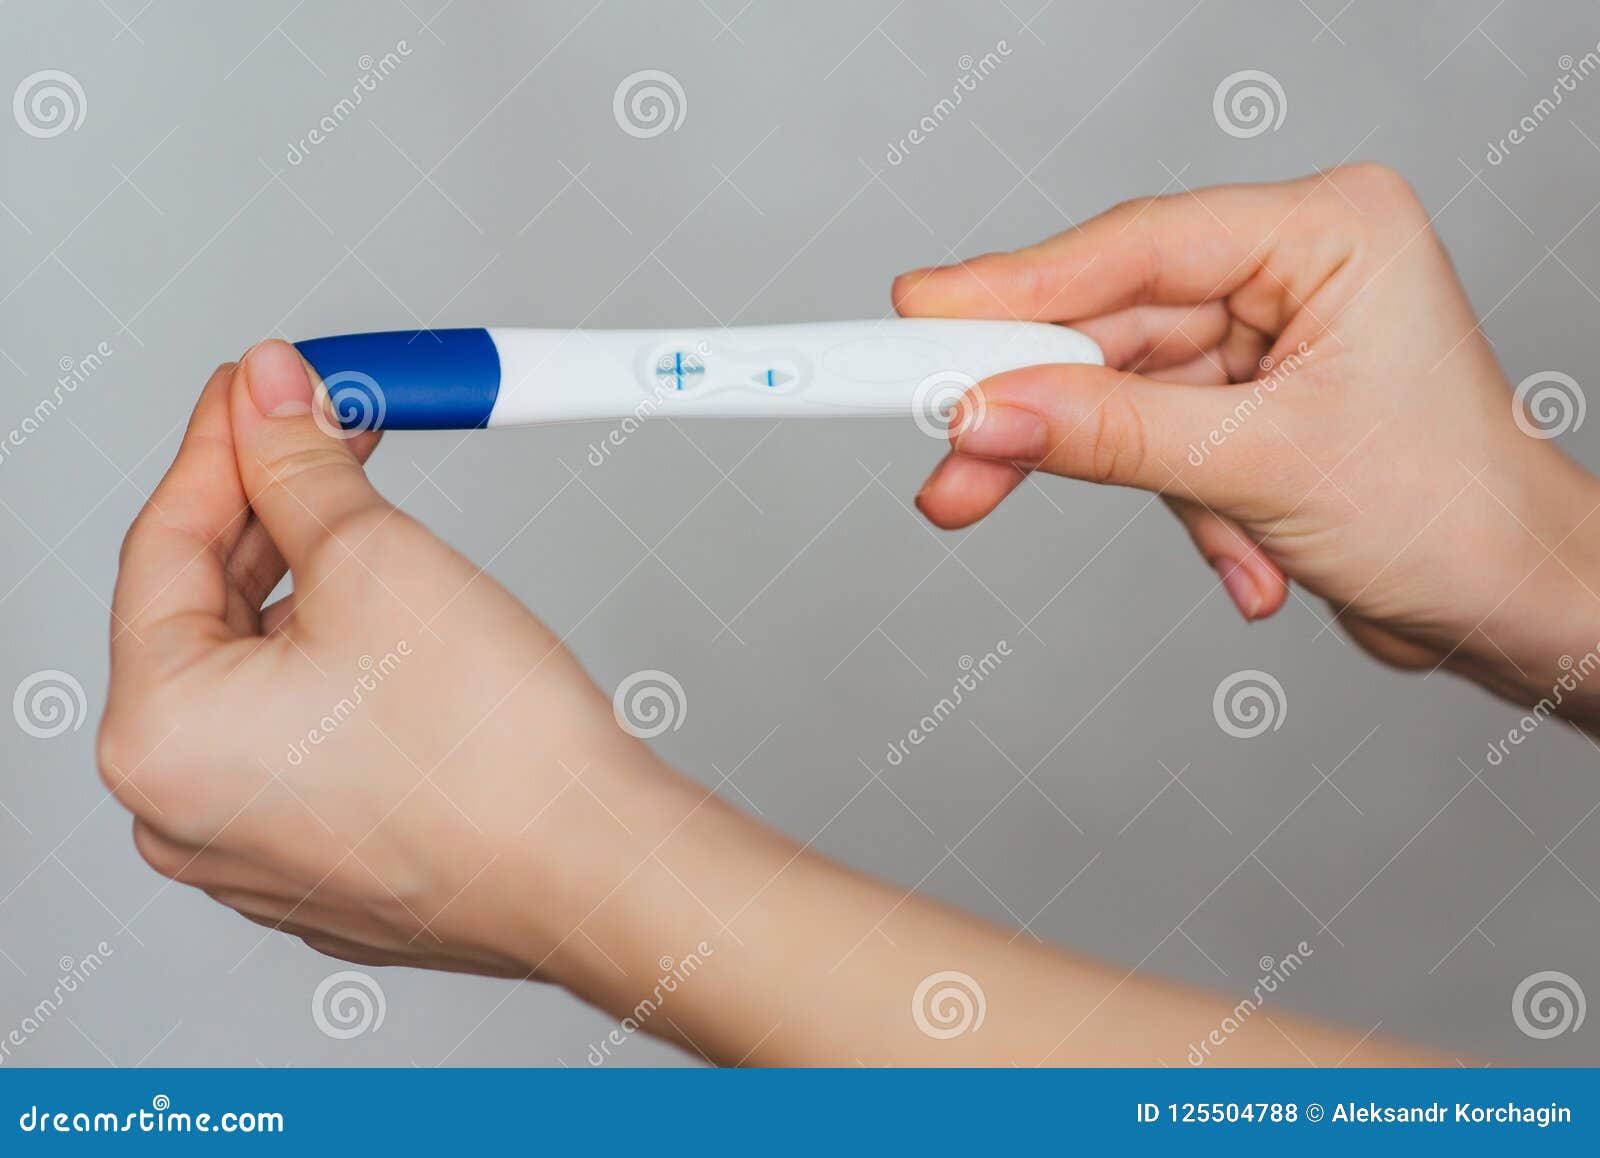 Тест на беременность в руках у девушки. Тест на беременность в руке девушки. Положительный тест на беременность в руке. Я беременна тест в руке. Тест на беременность подарок.